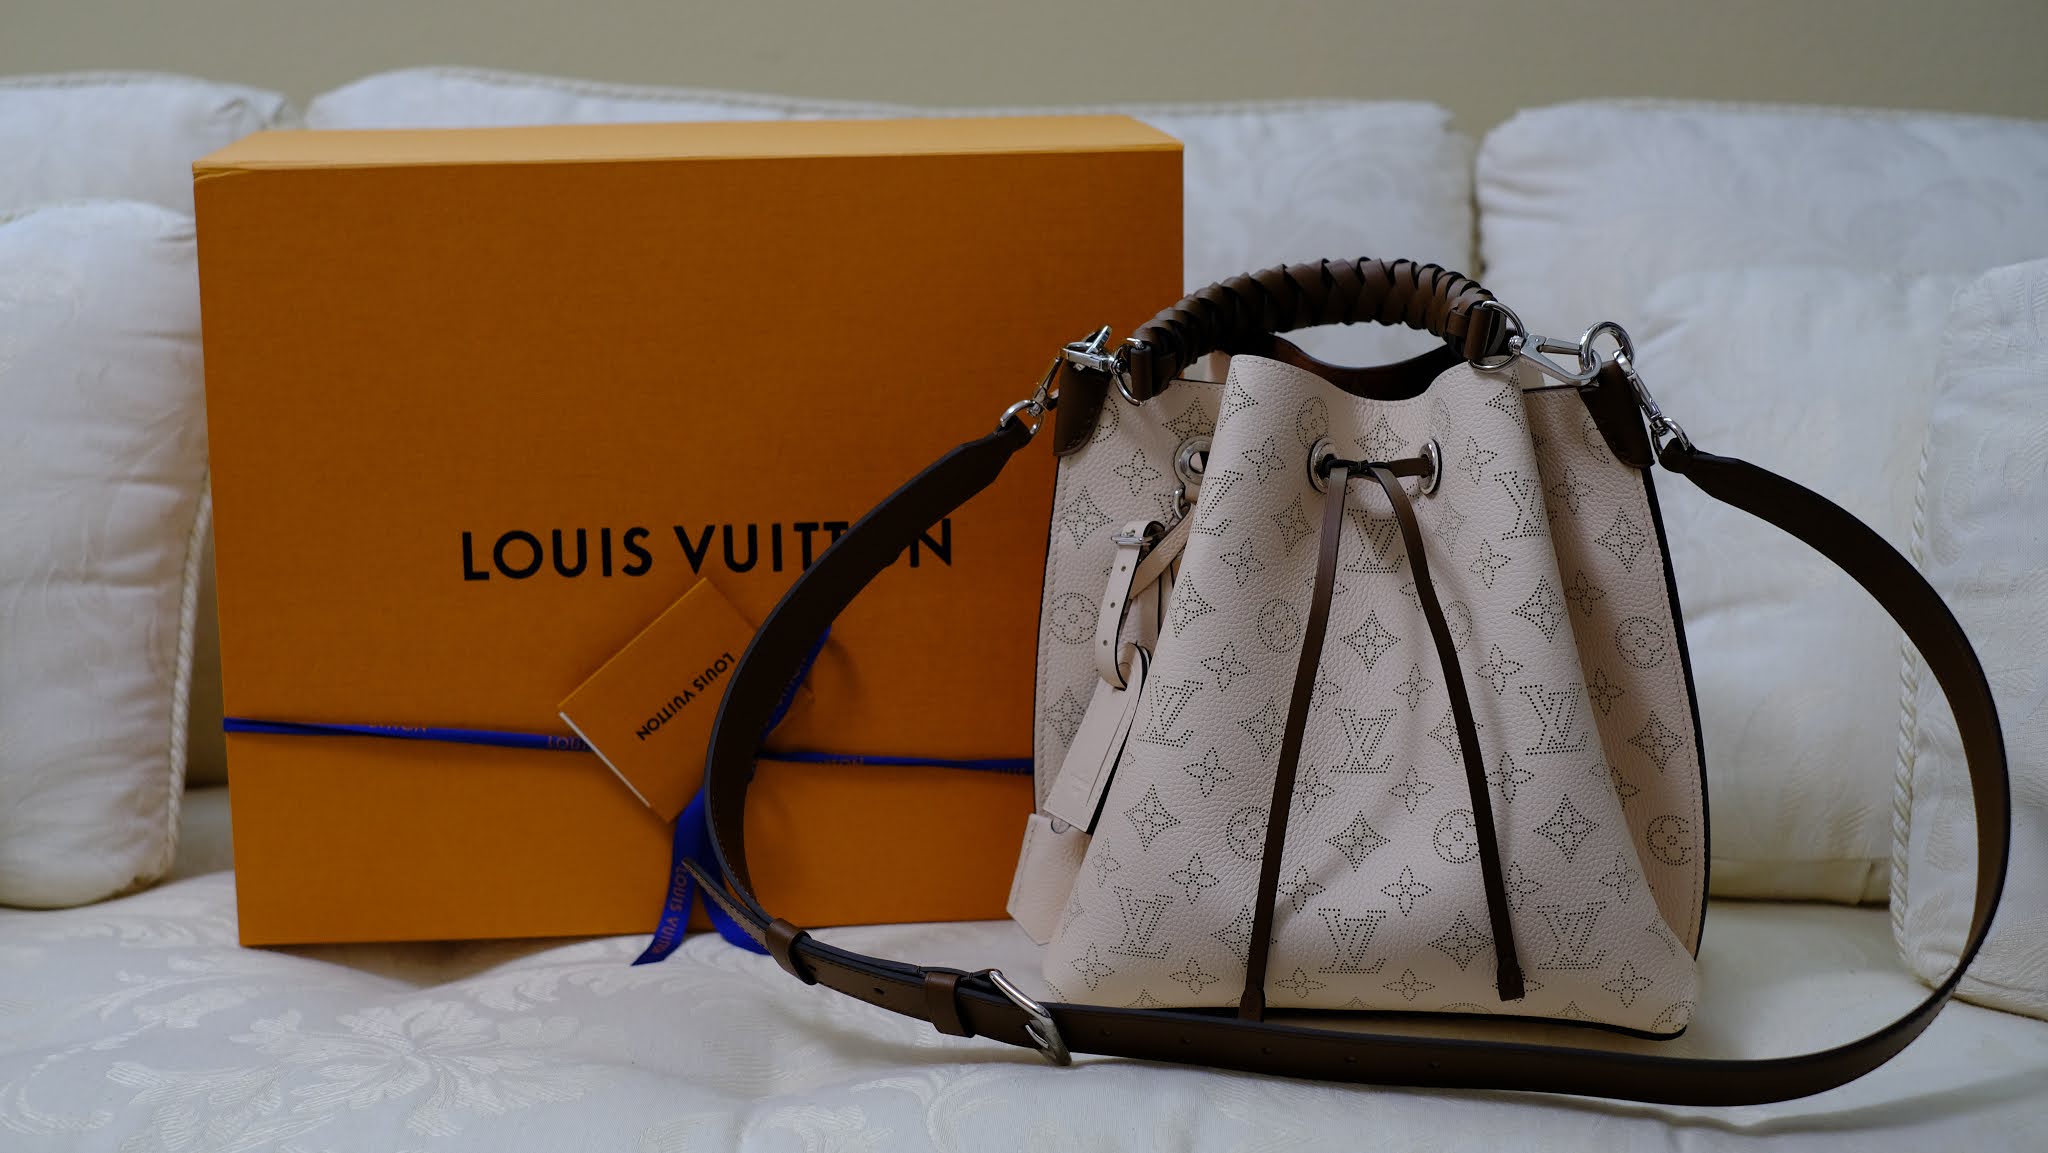 Unboxing Louis Vuitton Mahina Muria! Bucket bag Louis Vuitton